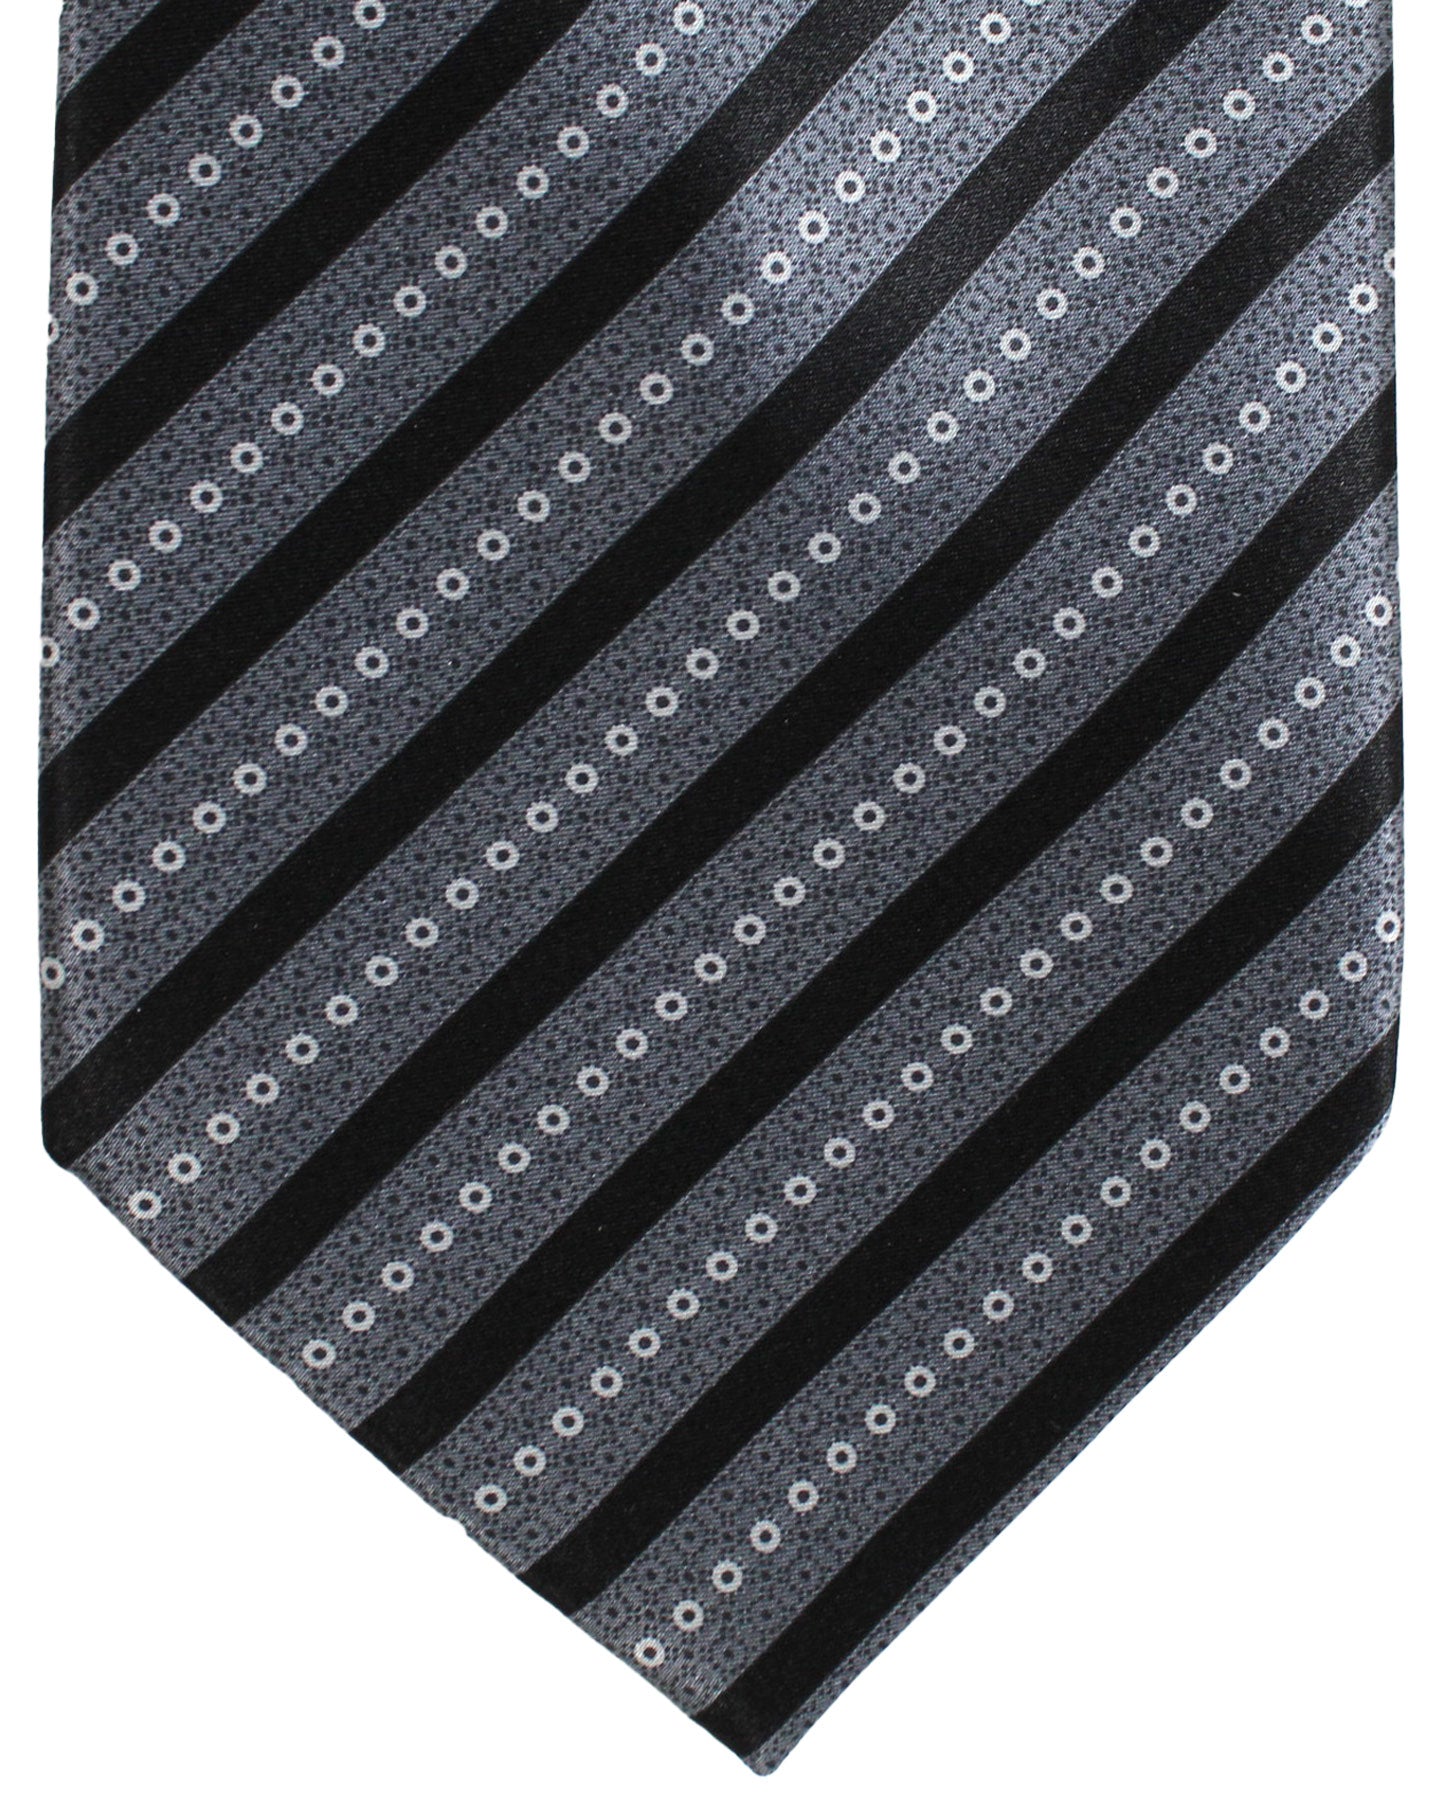 Stefano Ricci Silk Tie Gray Black Stripes